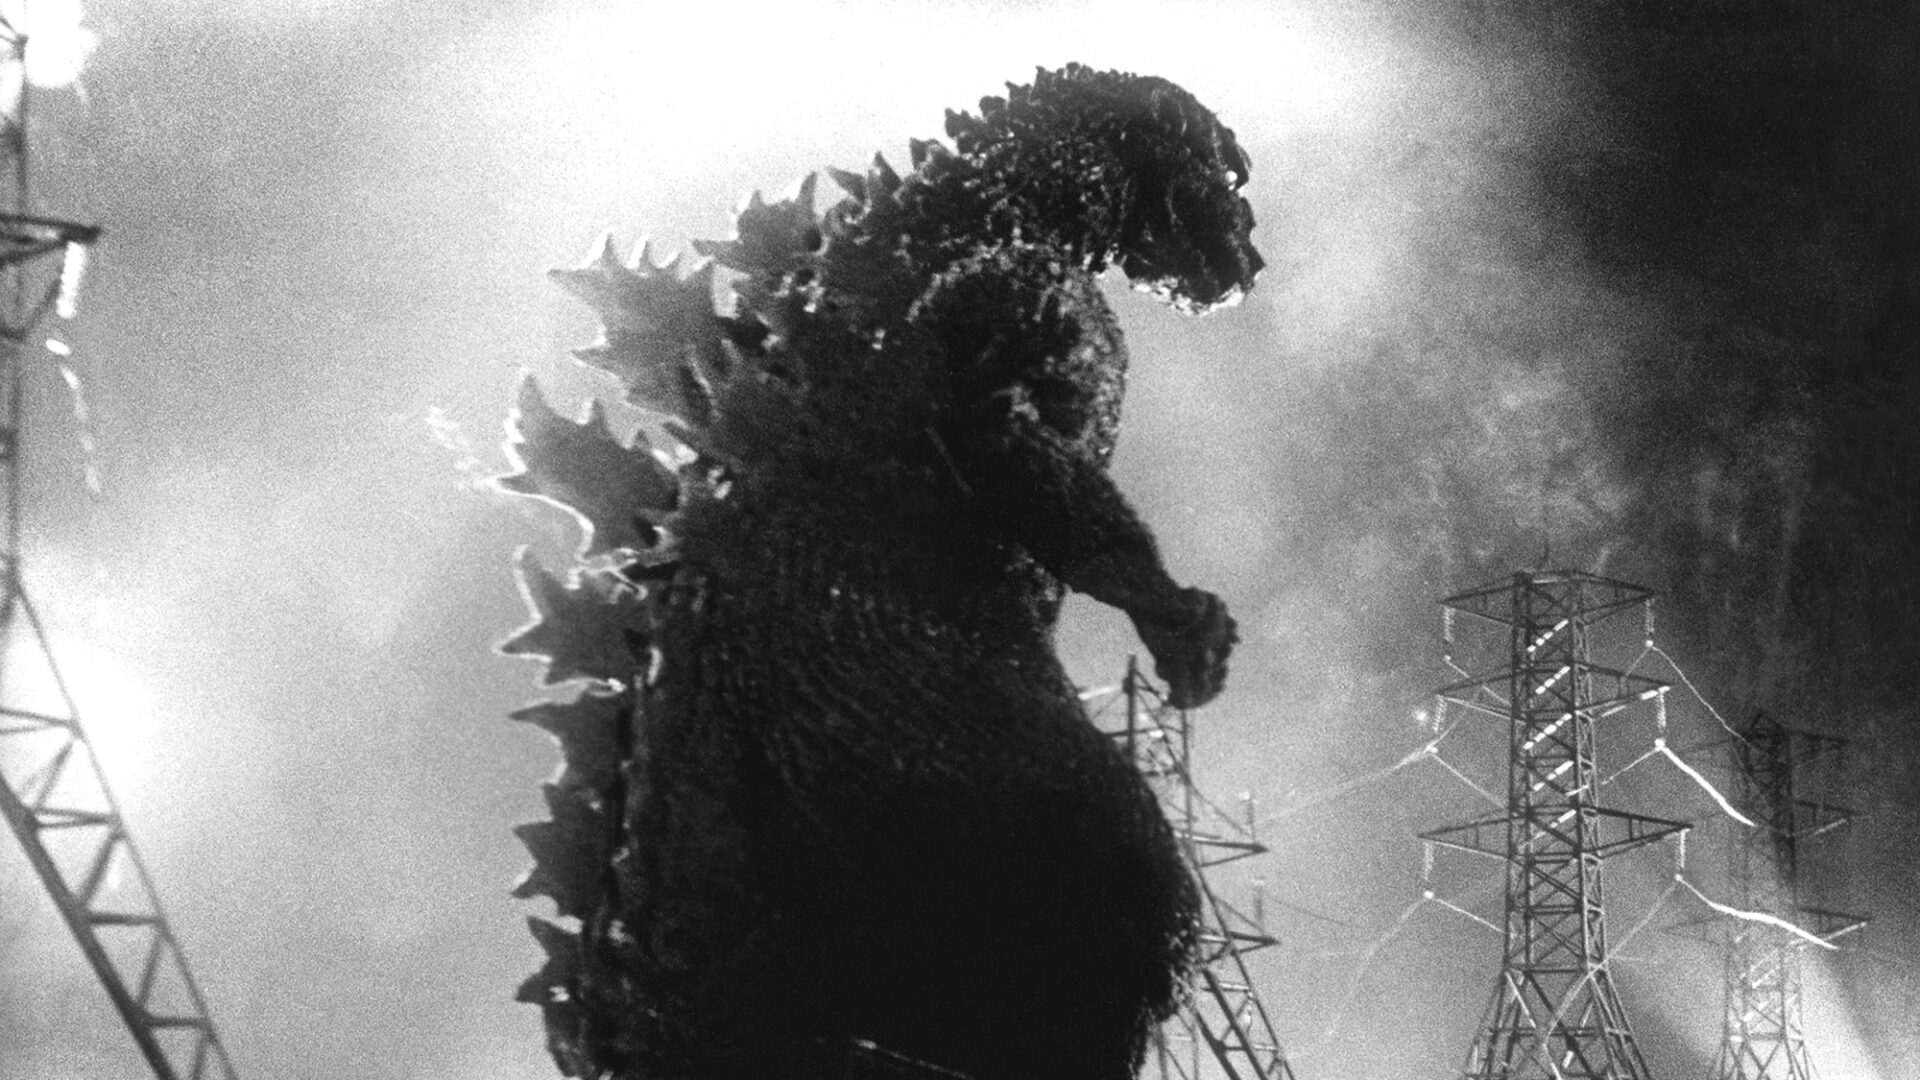 Godzilla 1